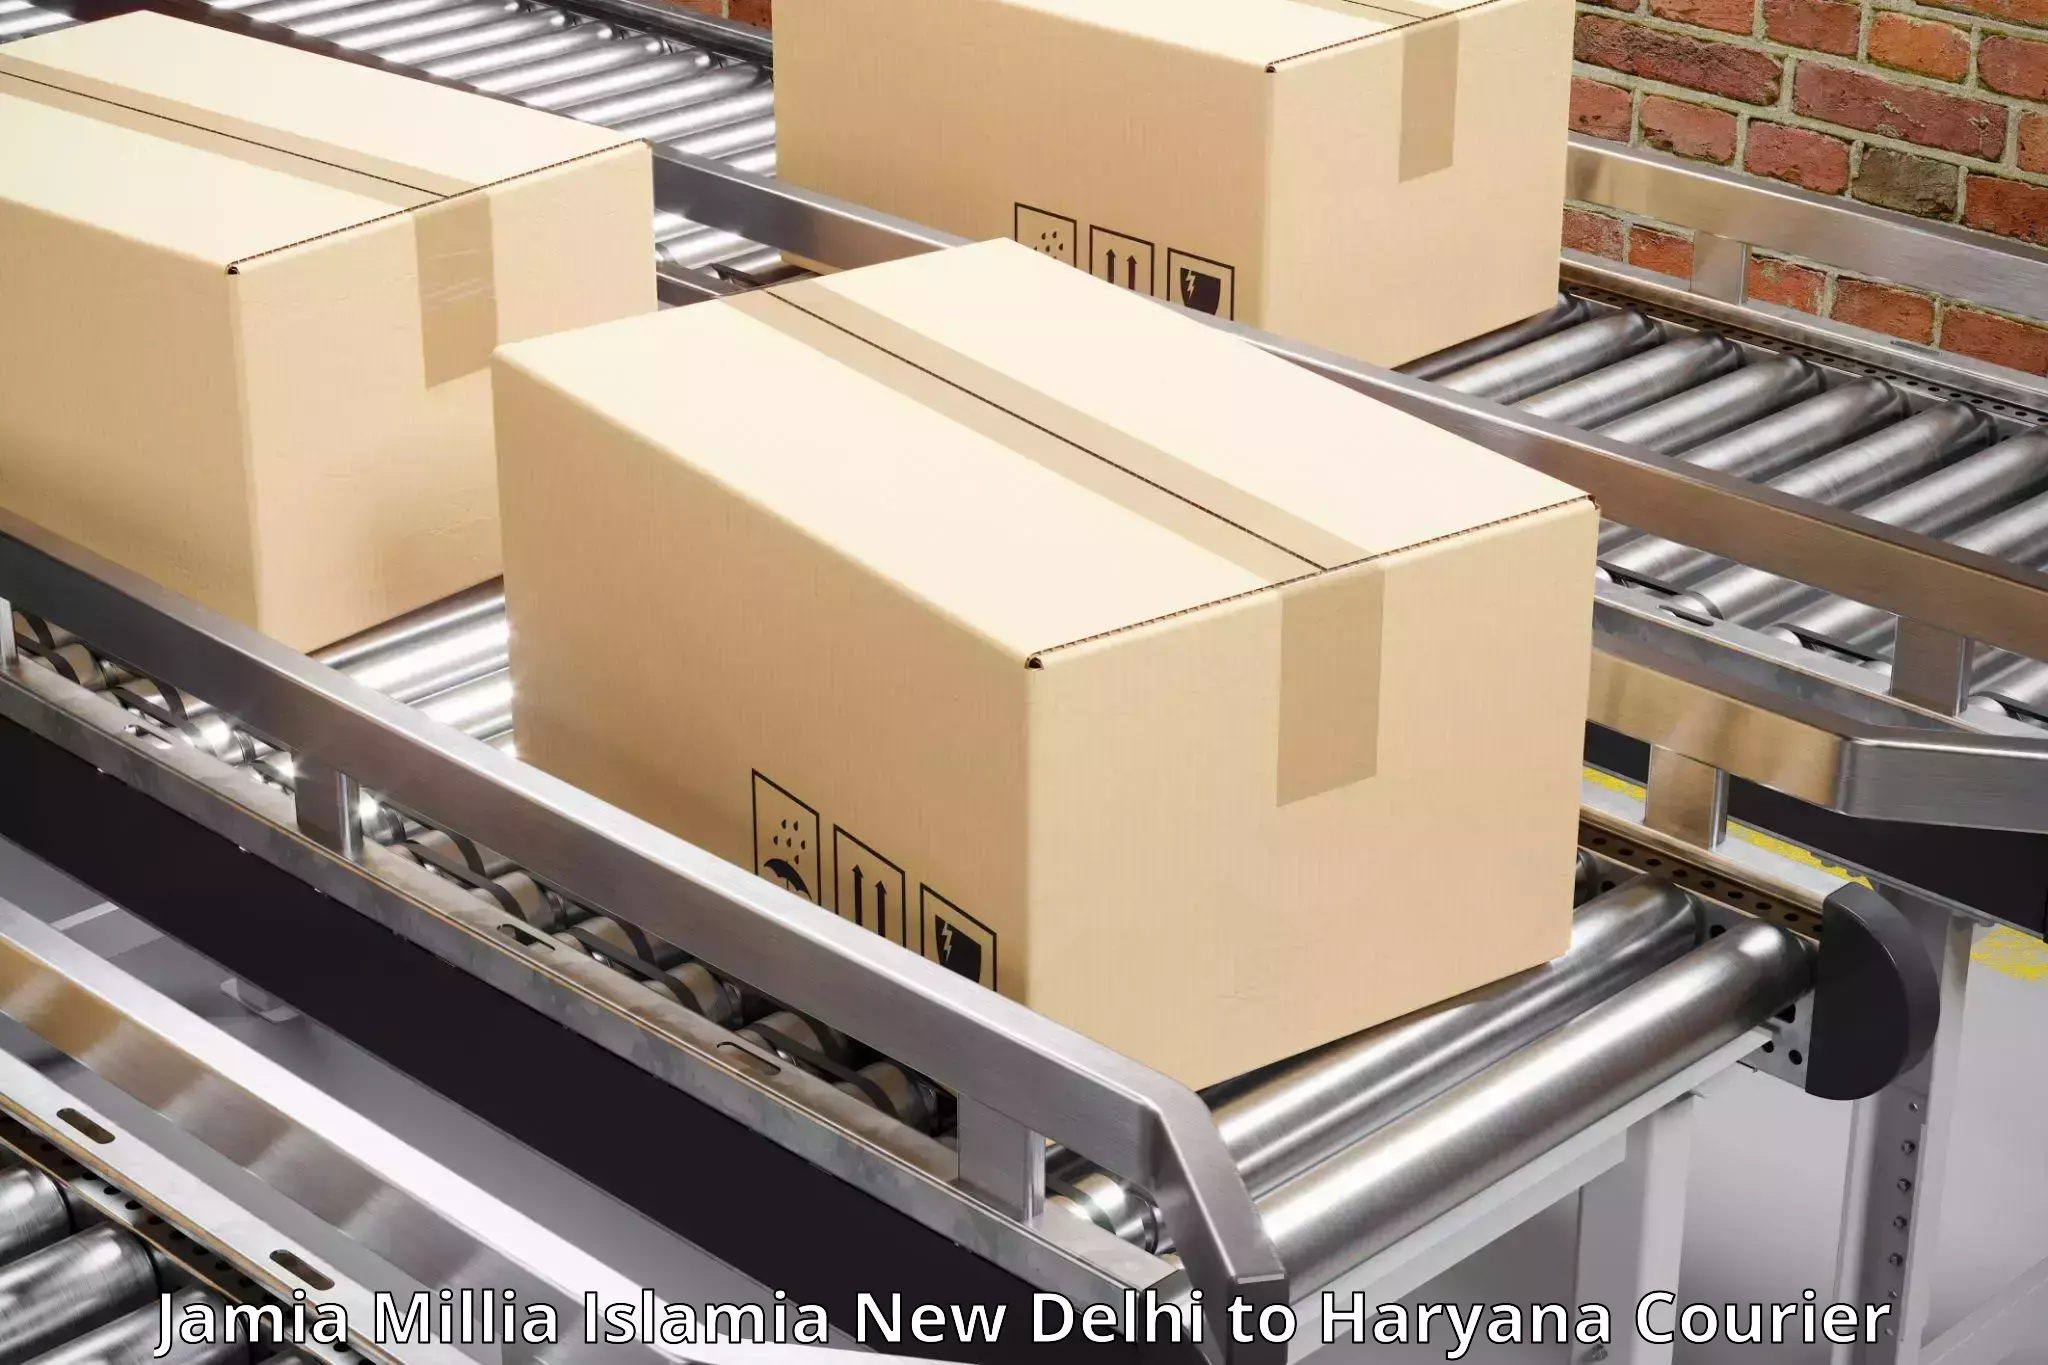 Global freight services Jamia Millia Islamia New Delhi to Haryana